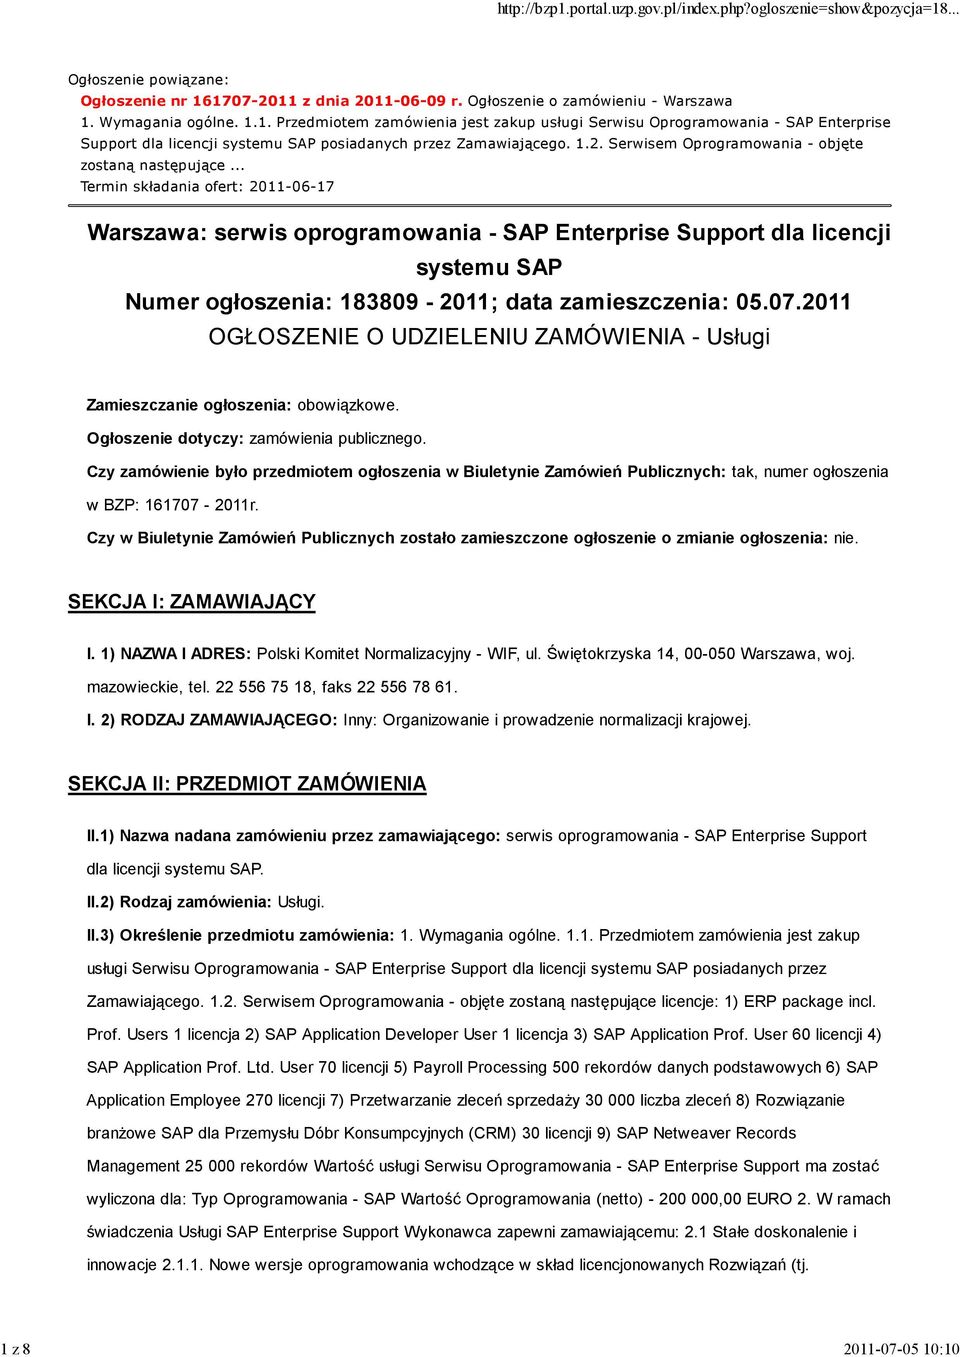 .. Termin składania ofert: 2011-06-17 Warszawa: serwis oprogramowania - SAP Enterprise Support dla licencji systemu SAP Numer ogłoszenia: 183809-2011; data zamieszczenia: 05.07.